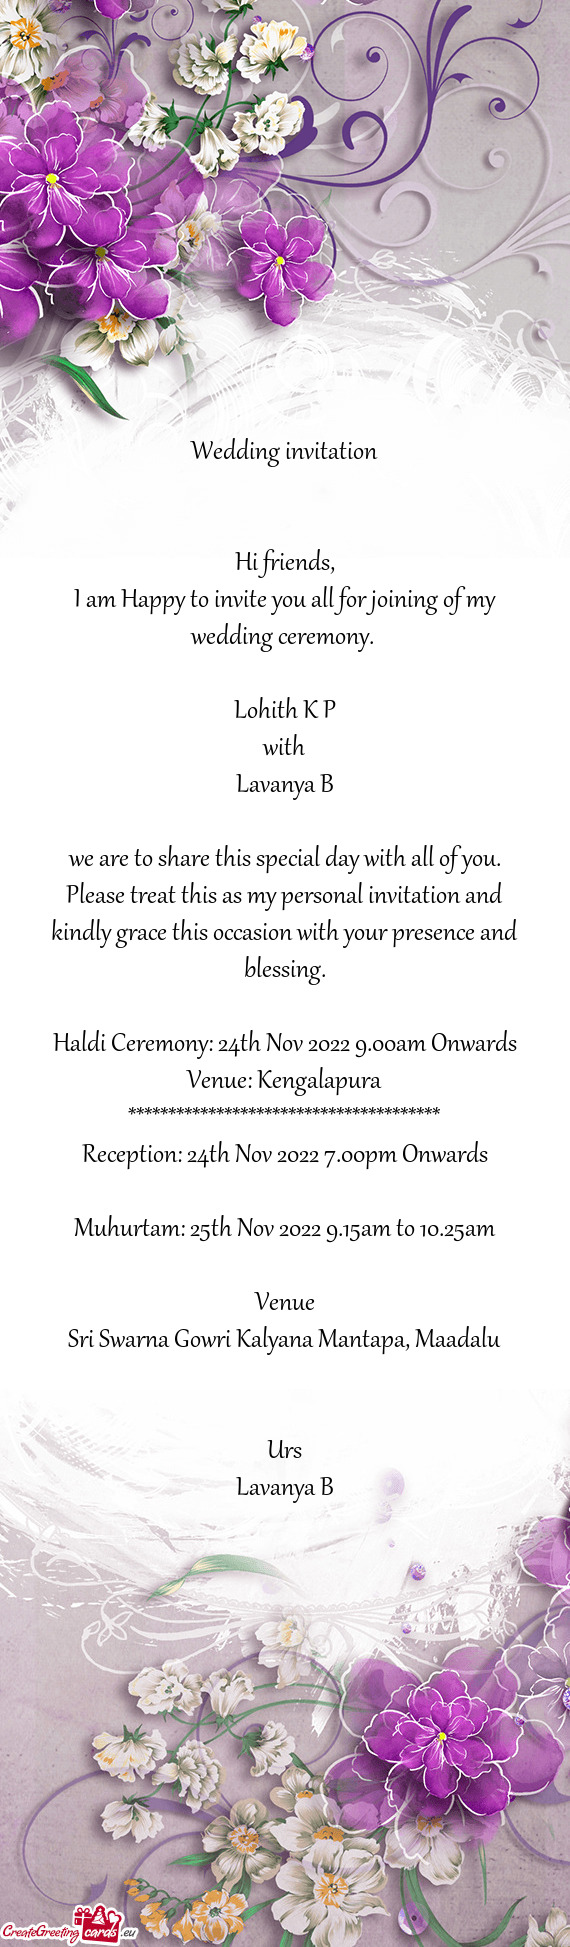 Haldi Ceremony: 24th Nov 2022 9.00am Onwards